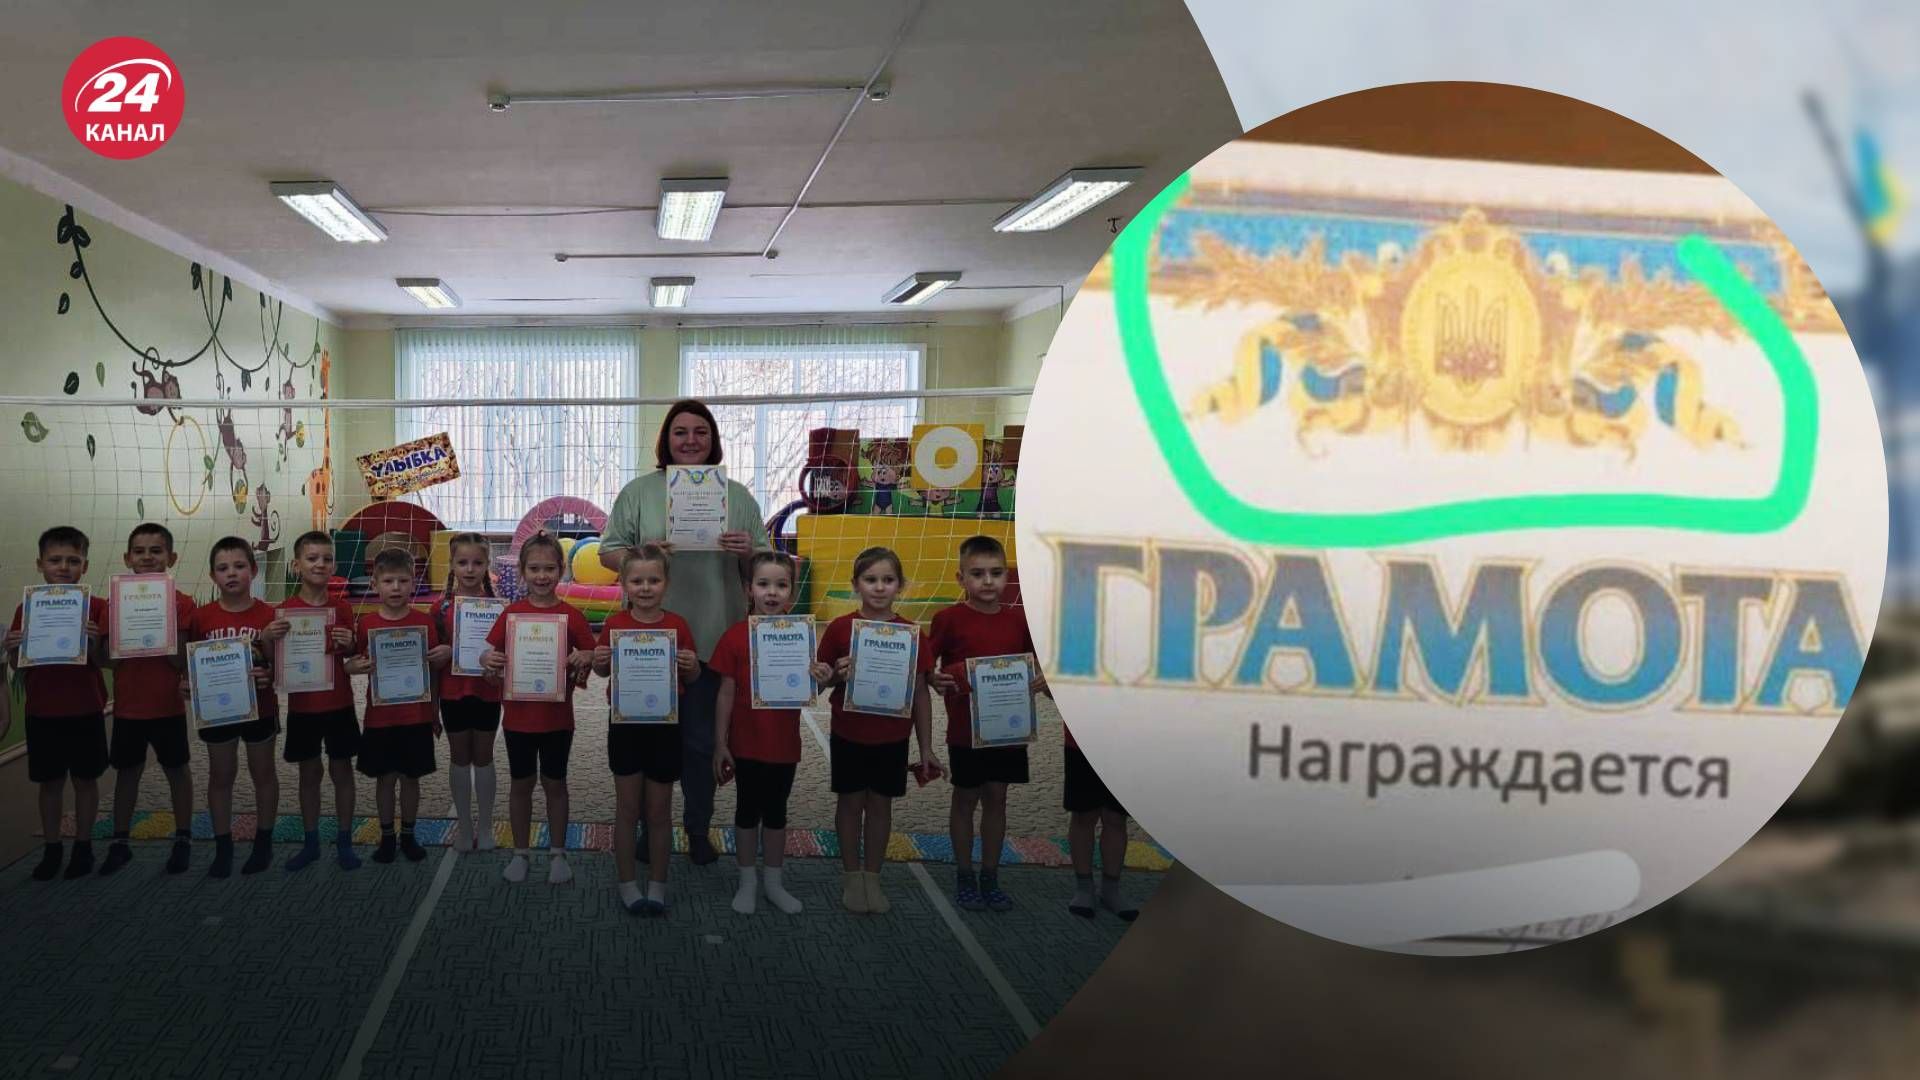 В России выдали грамоты с гербом Украины